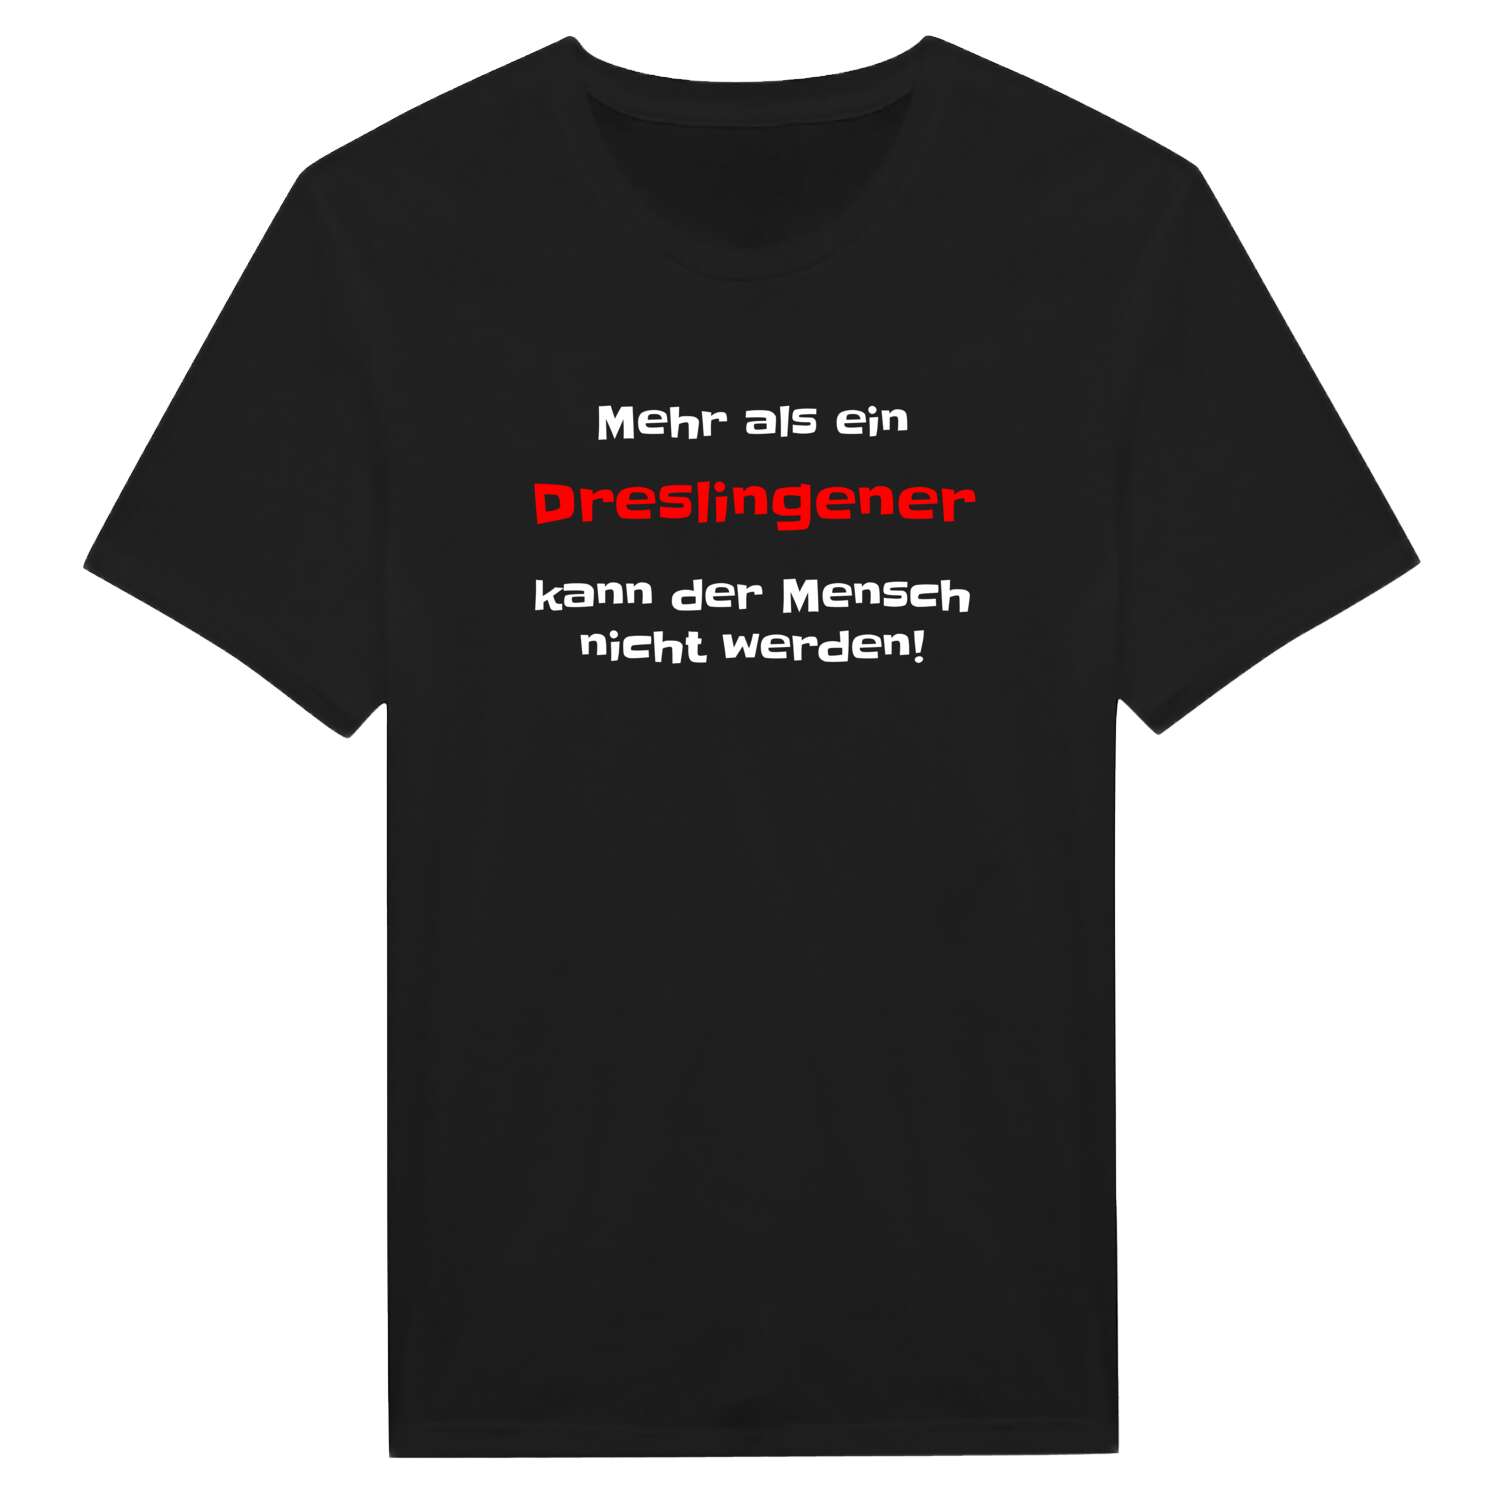 Dreslingen T-Shirt »Mehr als ein«